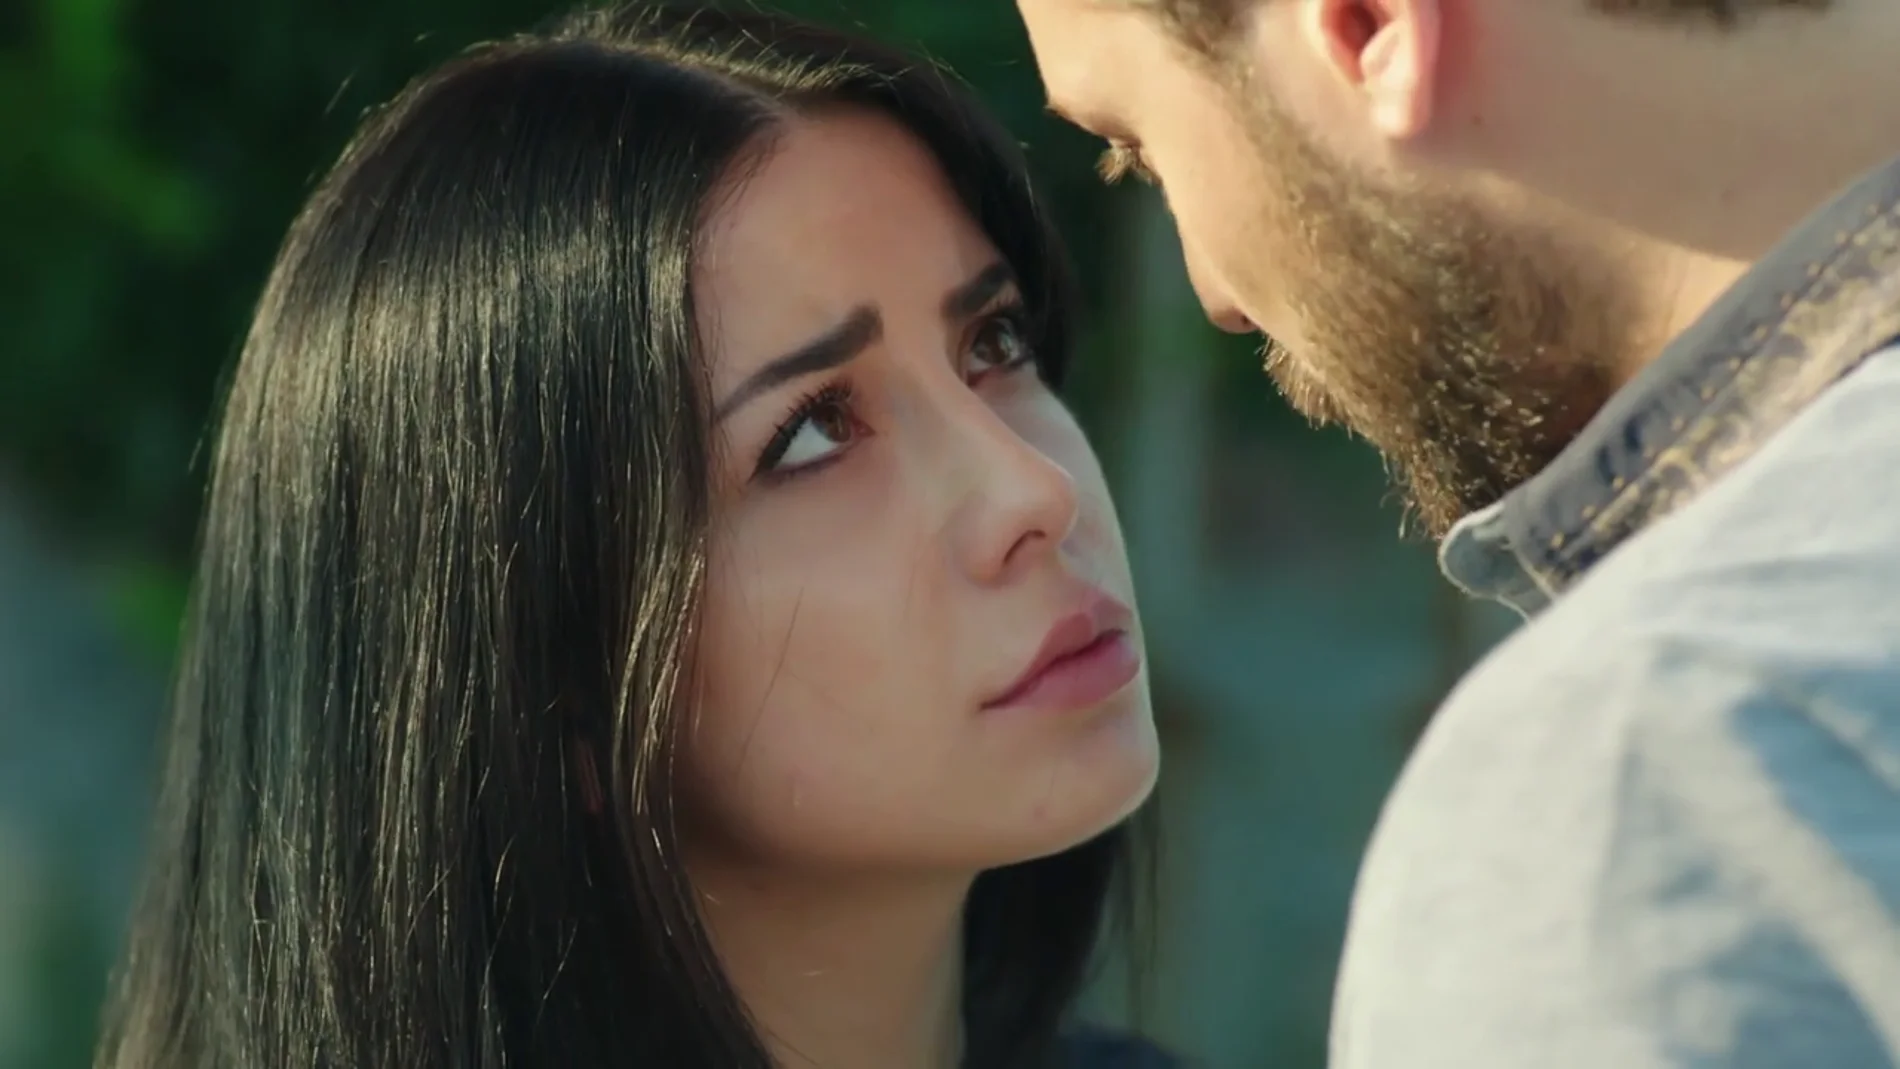 Zeynep lucha para intentar alejarse de Onur pero no puede: "Tú me amas tanto como yo a ti"